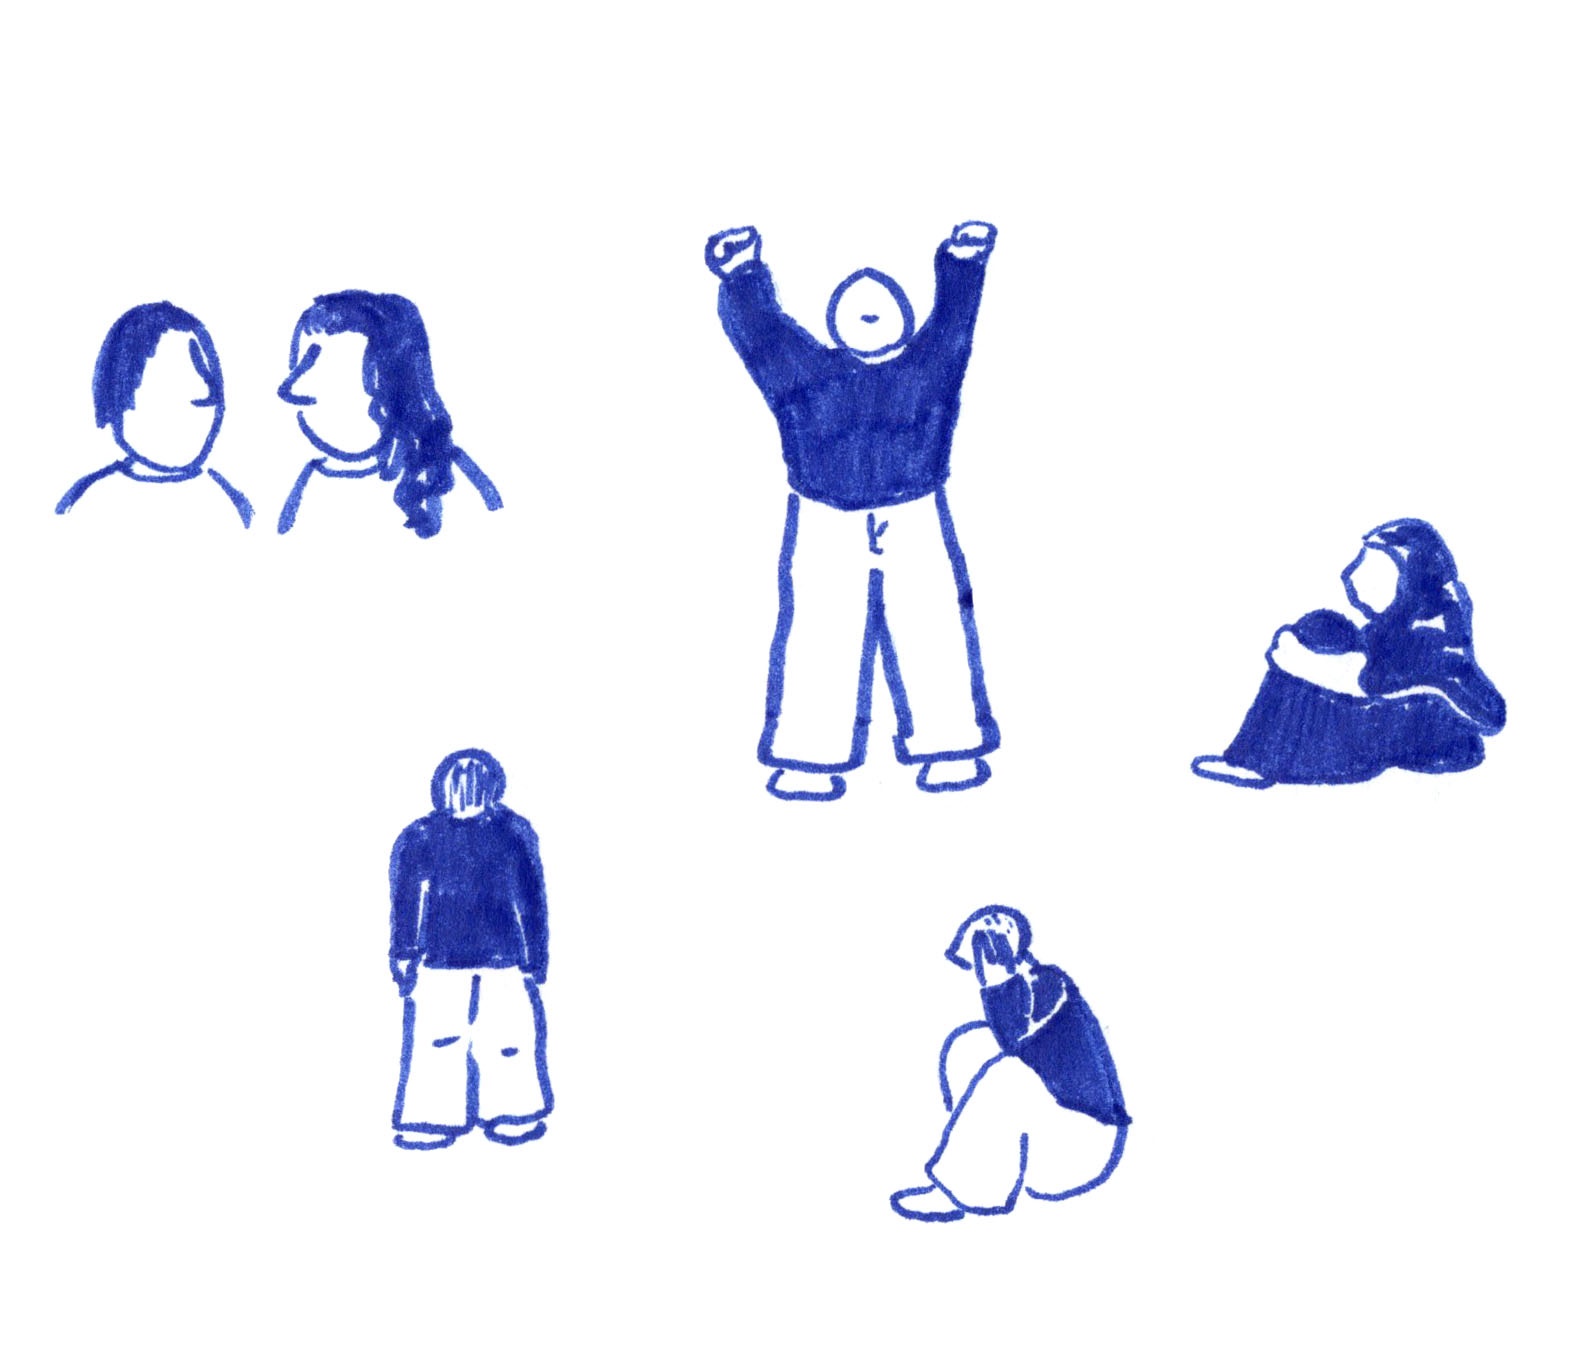 Illustratie van blauwe mens figuren in verschillende poses